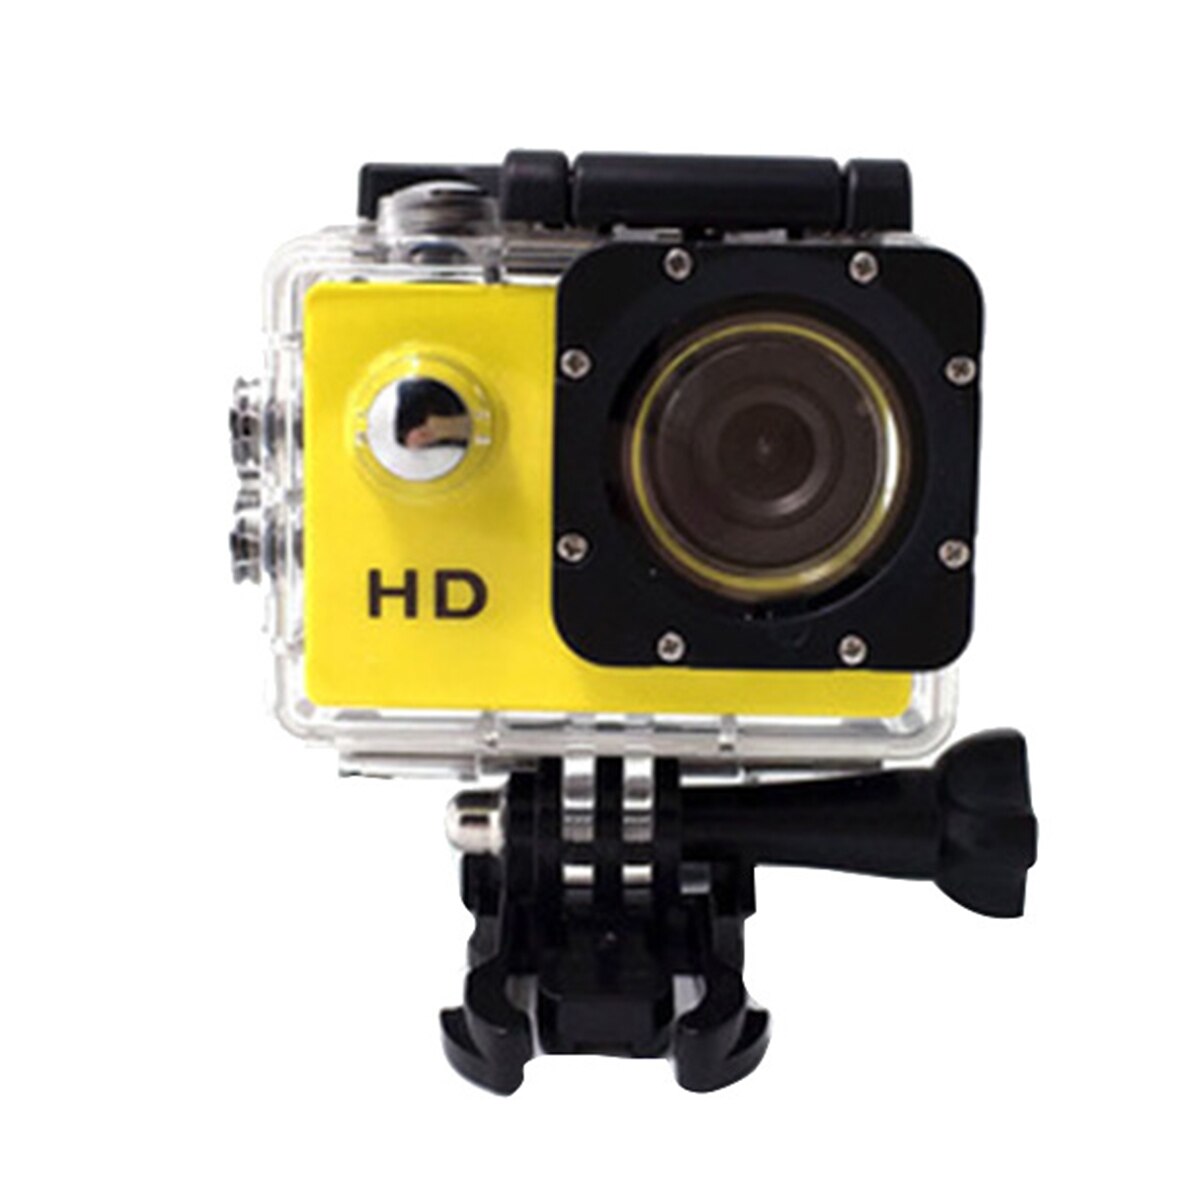 Owgyml udendørs sport action mini kamera vandtæt cam screen farve vandafvisende videoovervågning undersøisk kamera: Gul